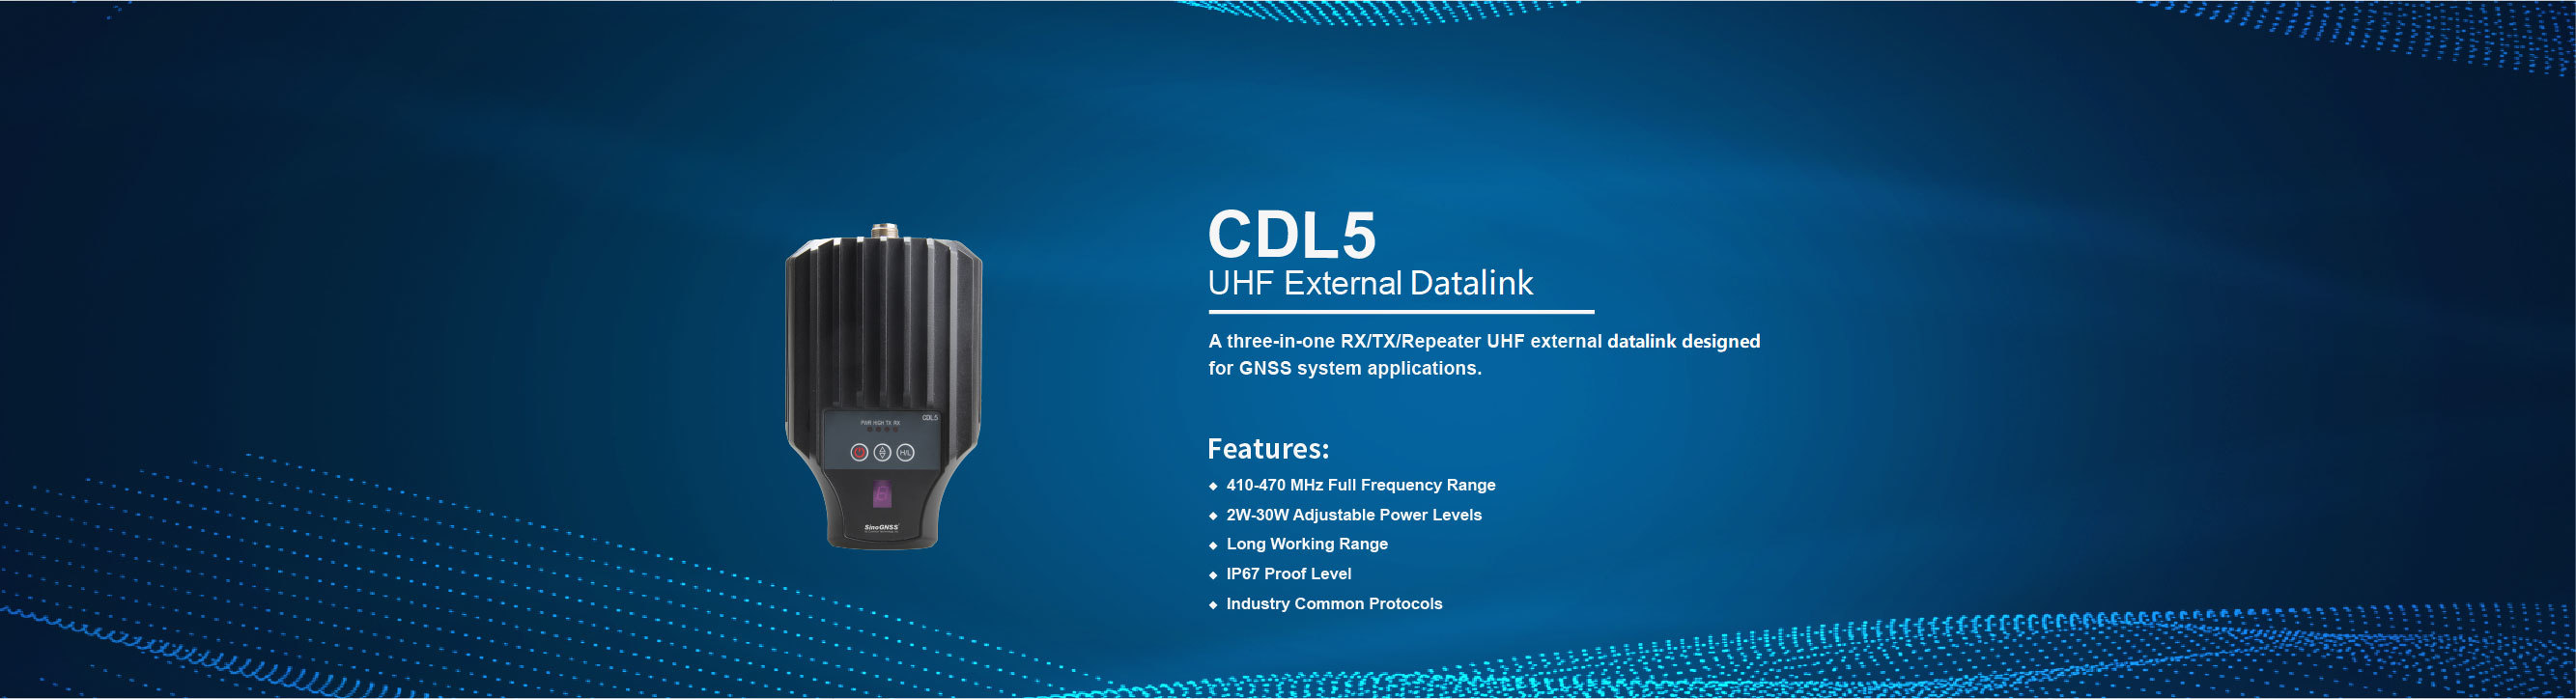 CDL5 UHF External Datalink